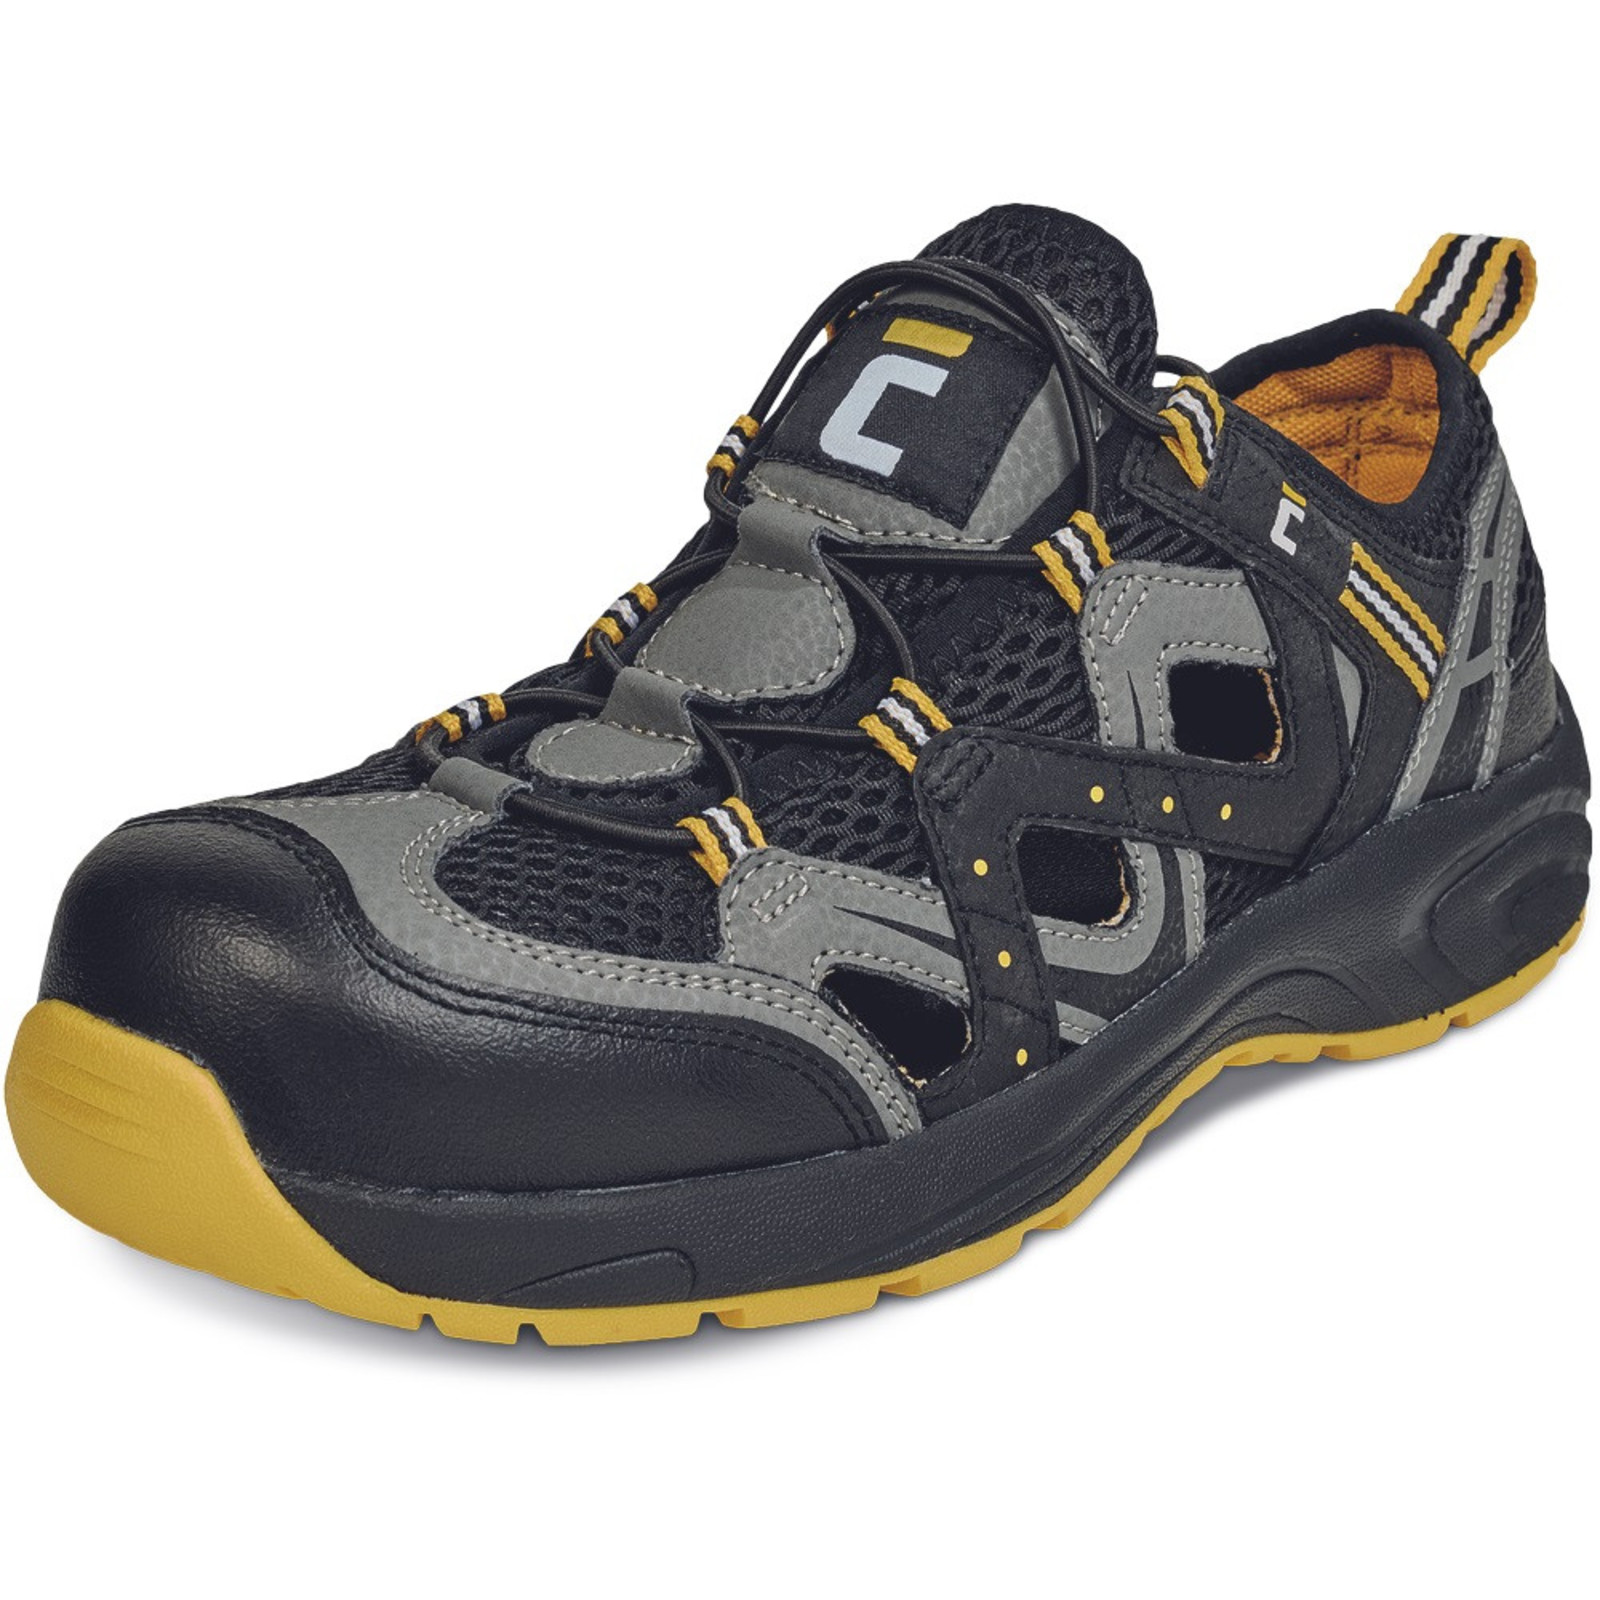 Bezpečnostné sandále Cerva Henford MF S1 SRC - veľkosť: 39, farba: čierna/žltá